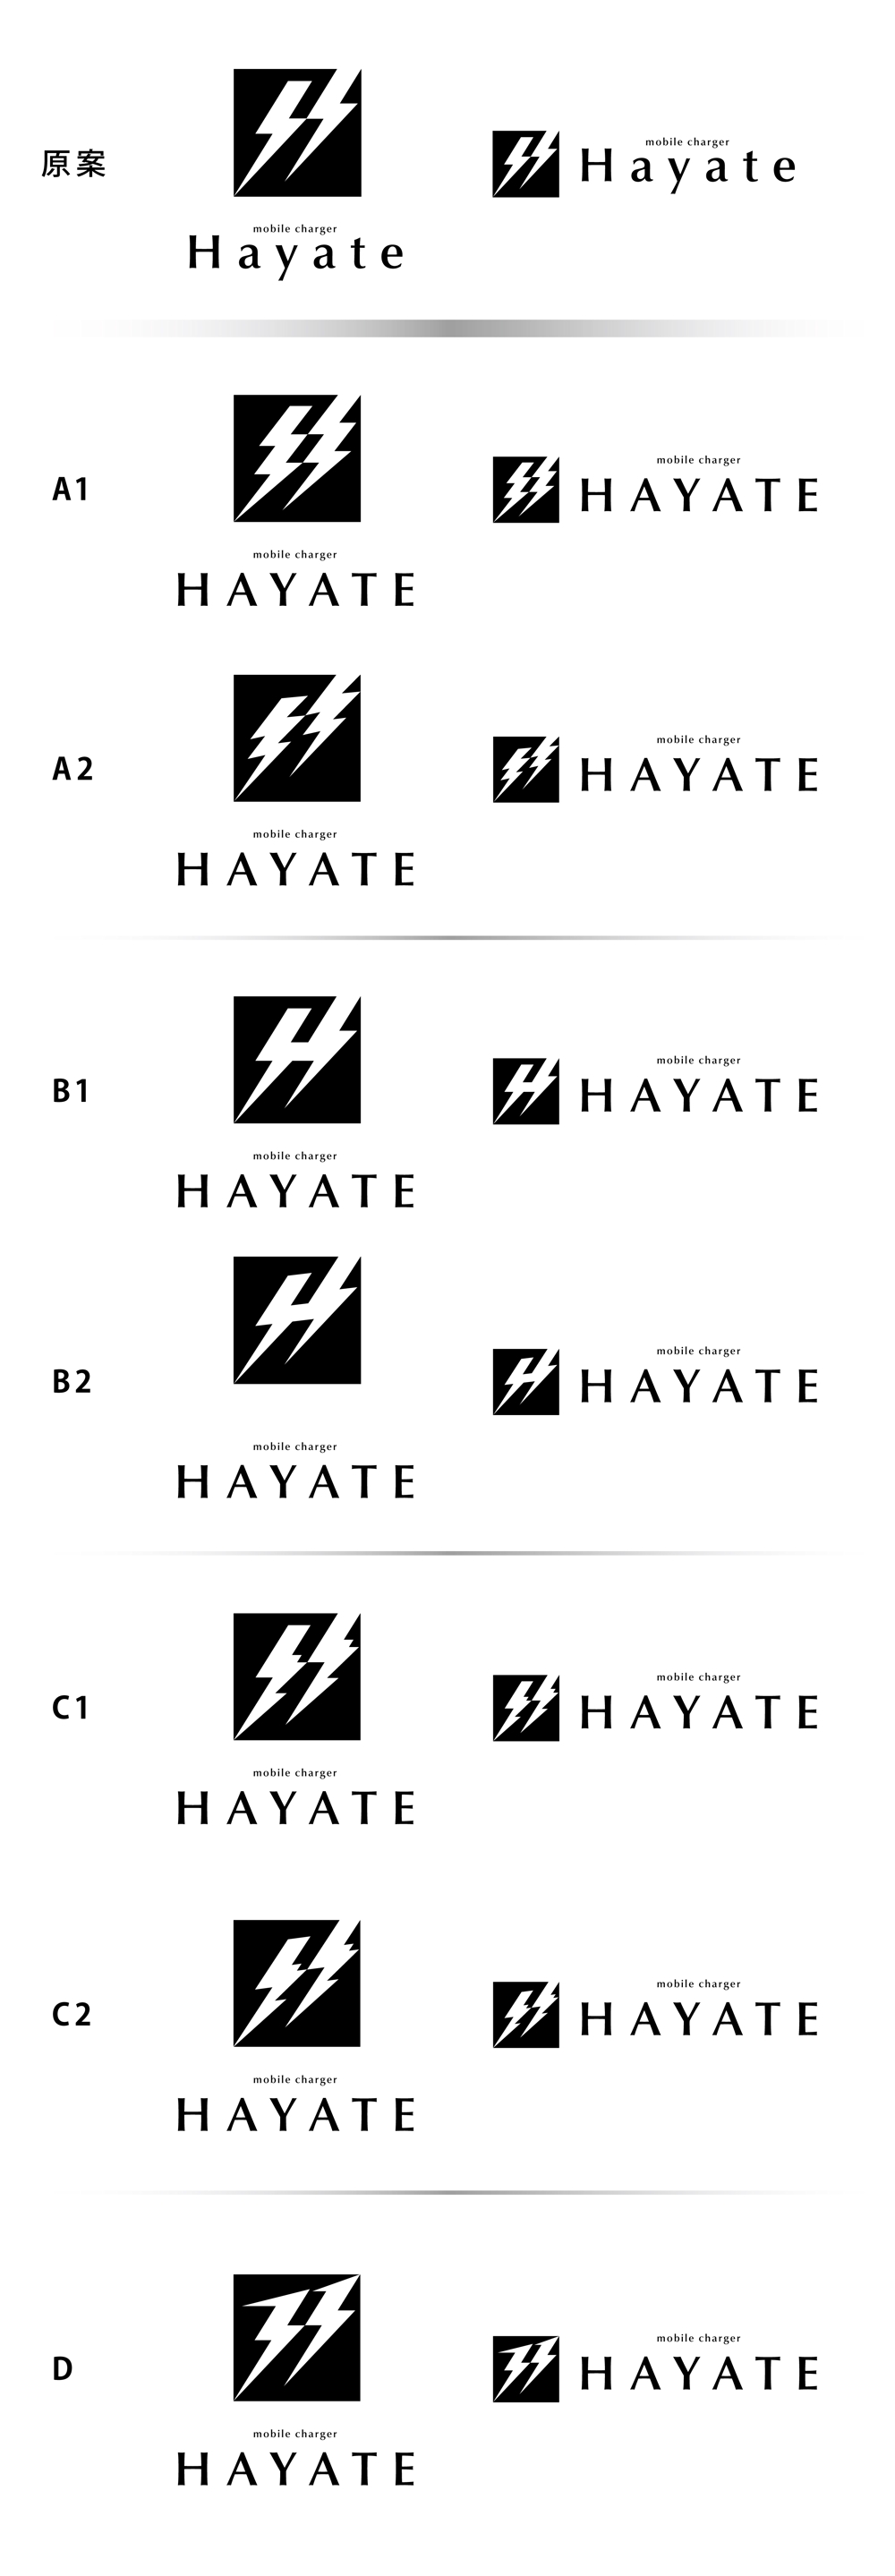 Hayate_logo0317.jpg